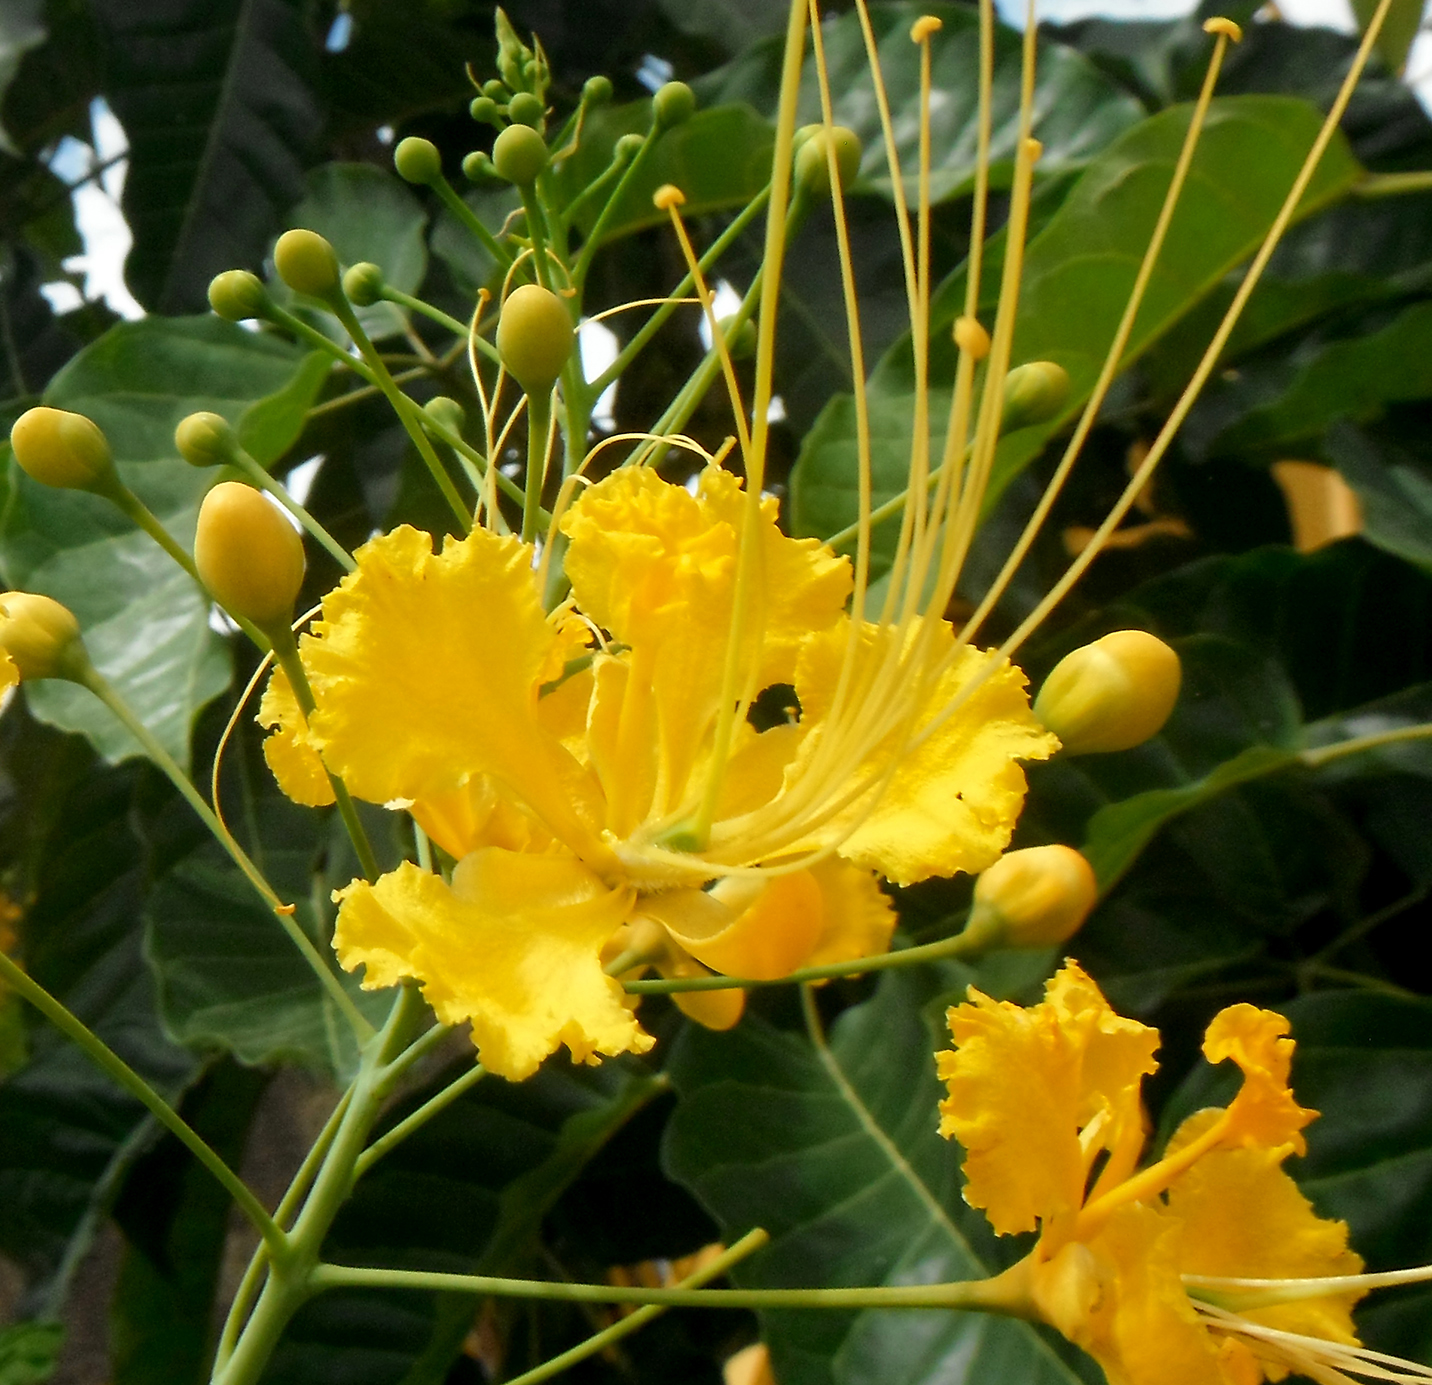 Caesalpinia pulcherrima (planta / plant). — Hive